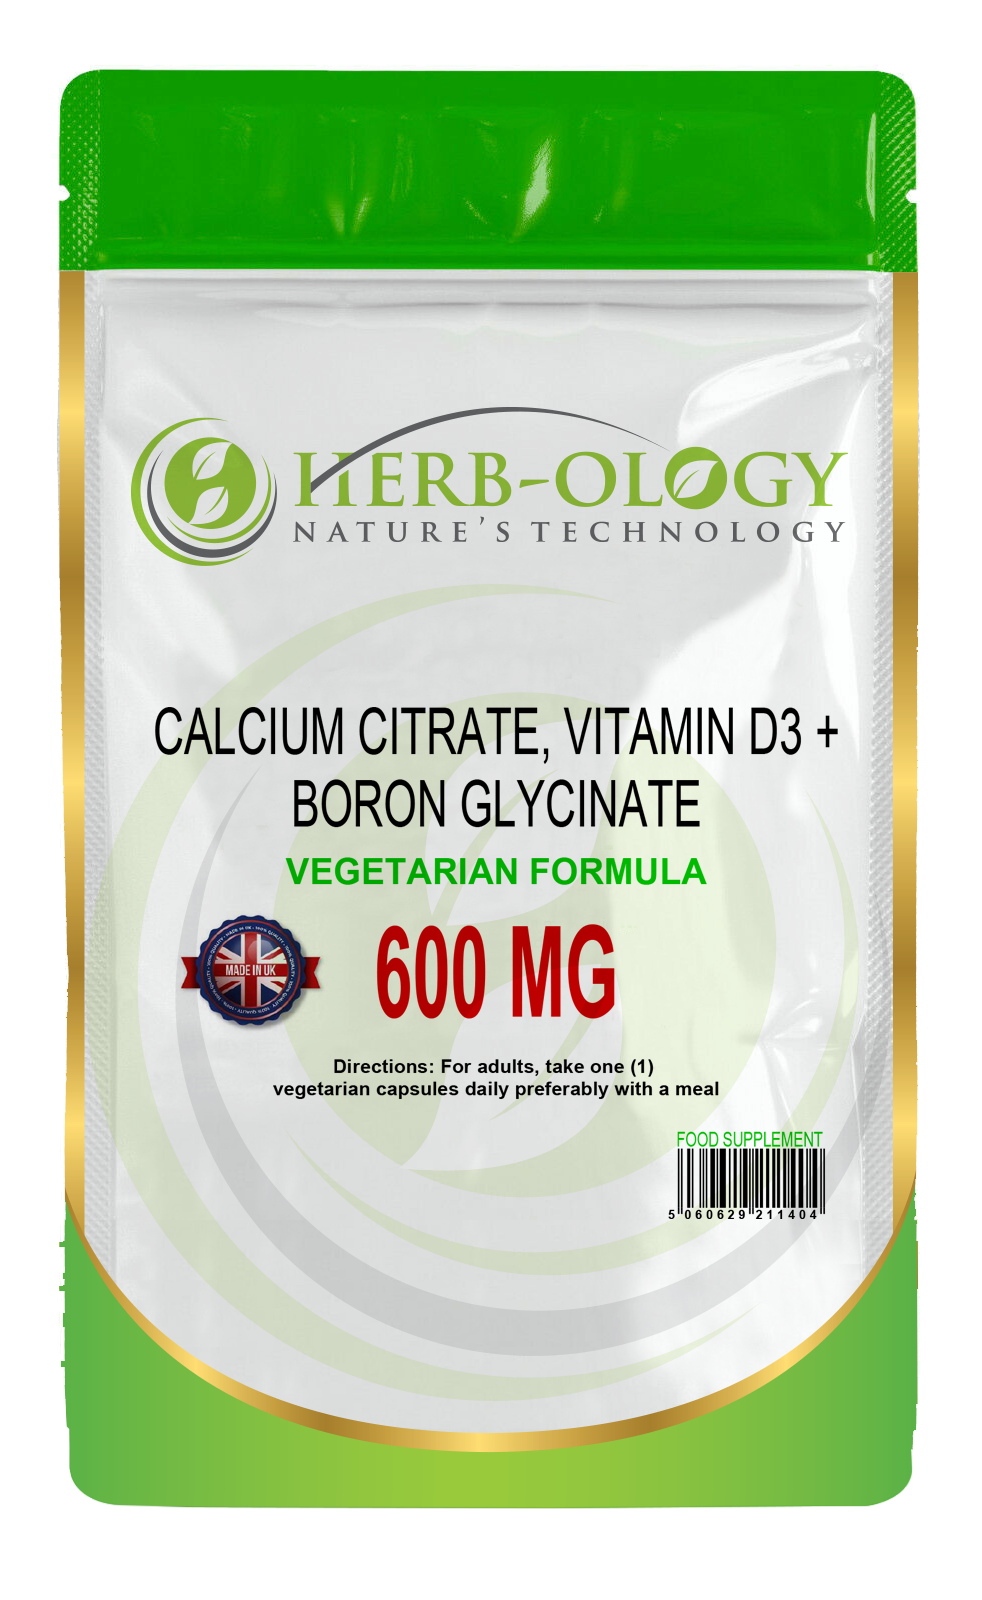 Calcium Citrate with Vitamin D3 & Boron Glycinate Complex Vegetarian Capsules